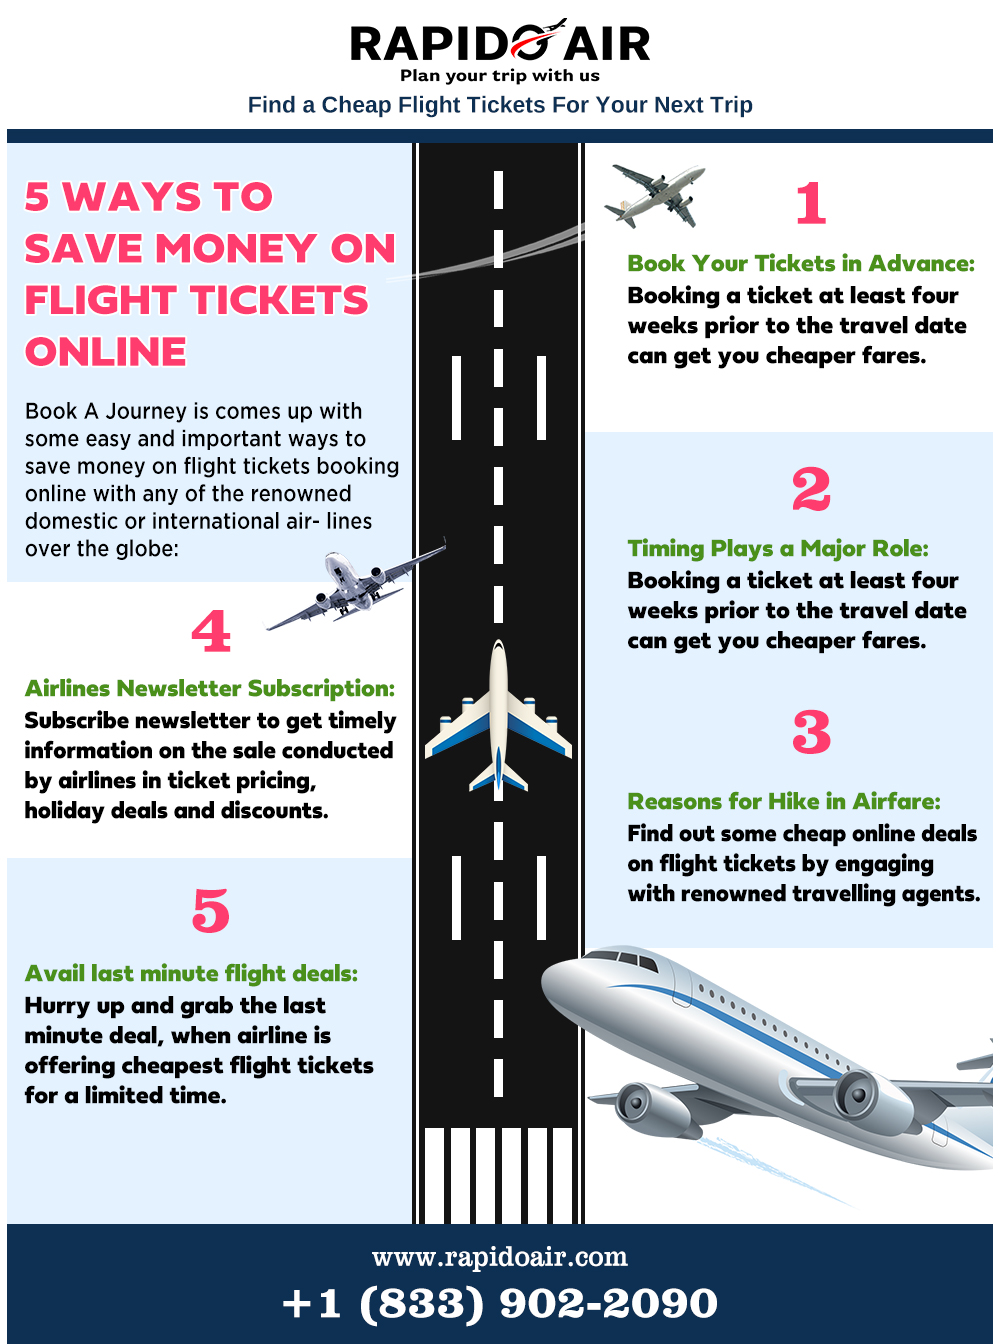 5 ways to save money on online flight tickets